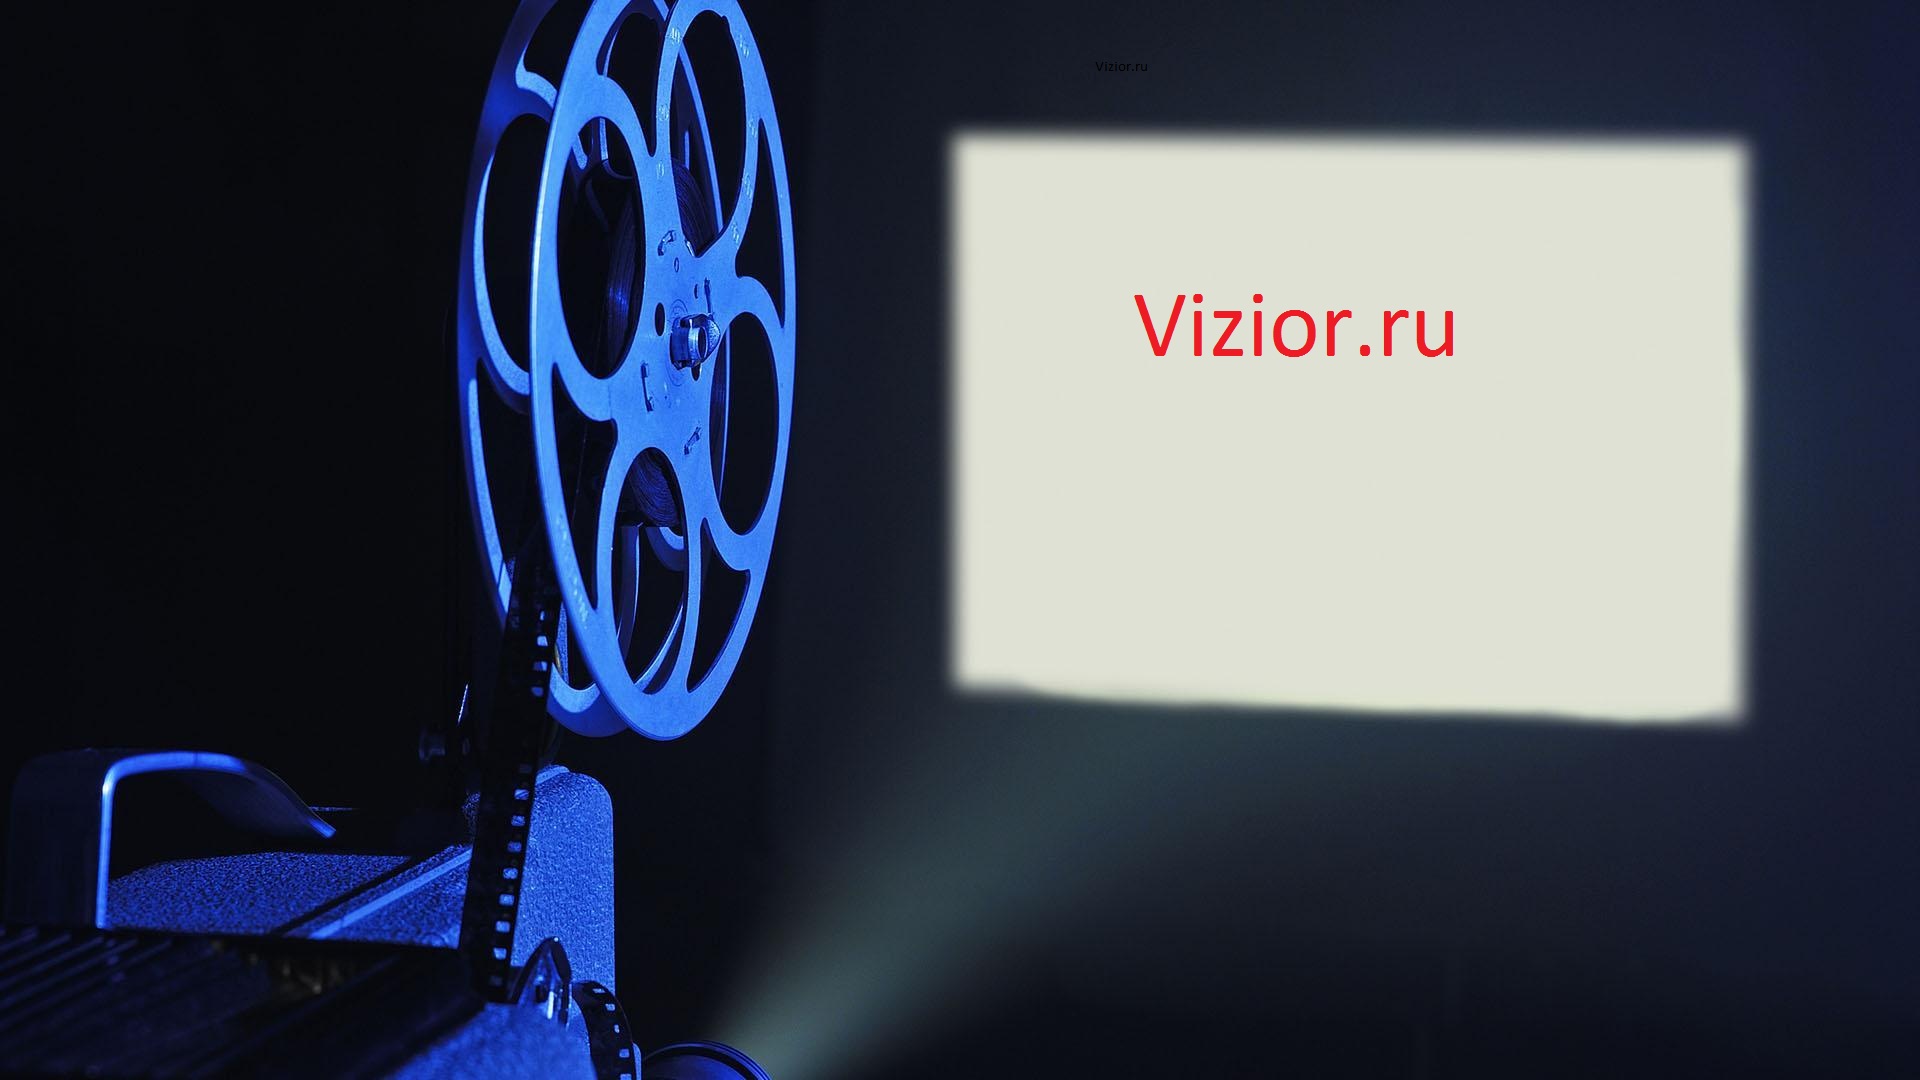 Отзывы о магазине Vizior.ru (Визиор ру)